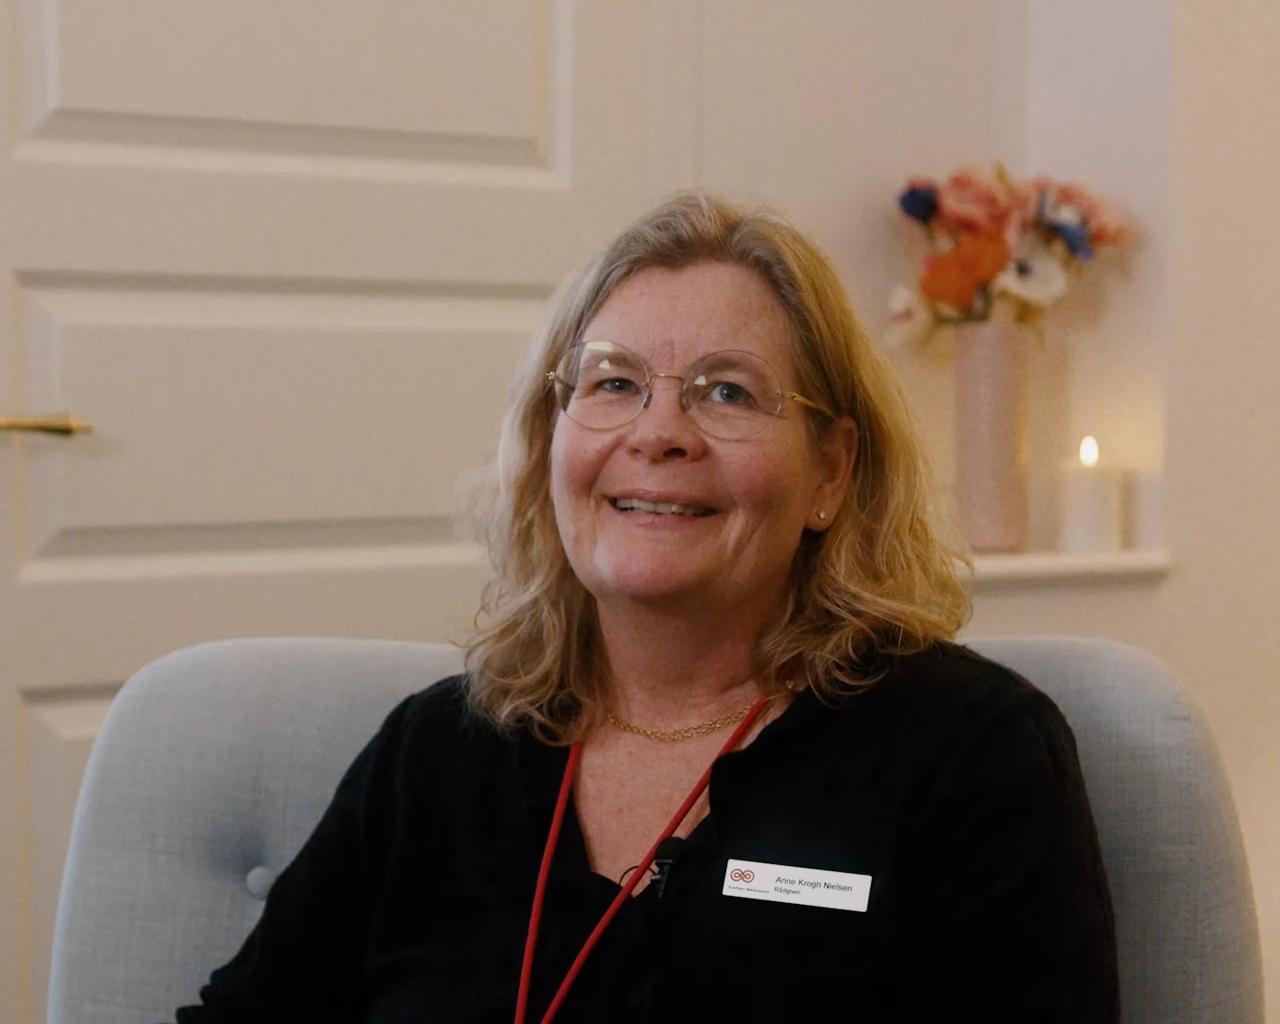 Anne Krogh Nielsen er rådgiver i Kræftrådgivningen i Aabenraa, som er en af Kræftens Bekæmpelses 12 store rådgivninger med gratis rådgivningstilbud, aktiviteter og fællesskaber til kræftpatienter og pårørende. Foto: Holly Create